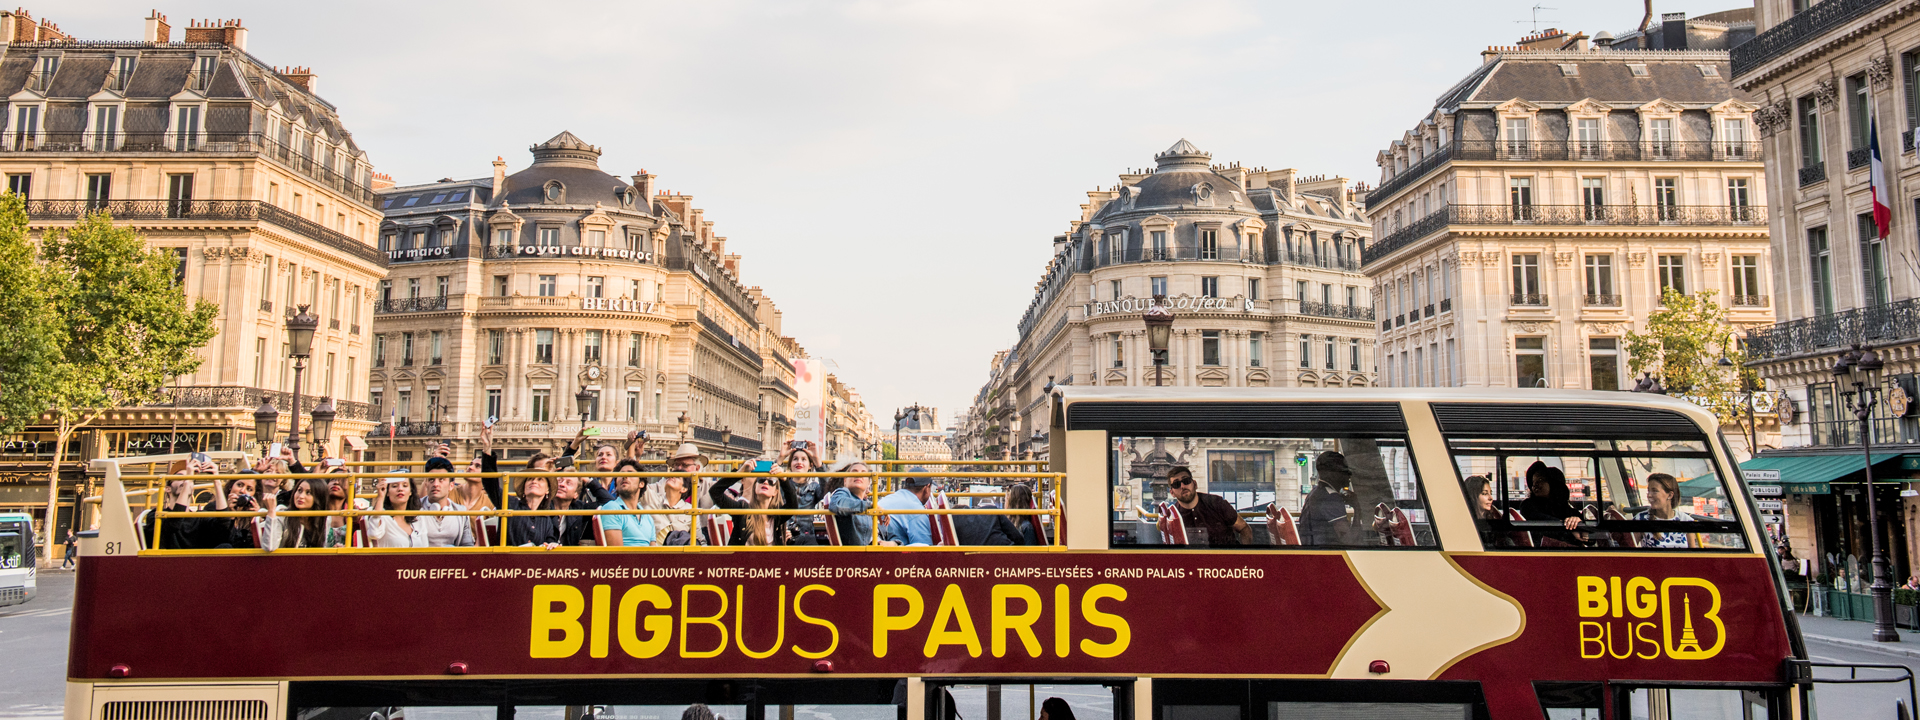 巴黎 Big Bus 隨上隨下觀光巴士之旅（敞篷）